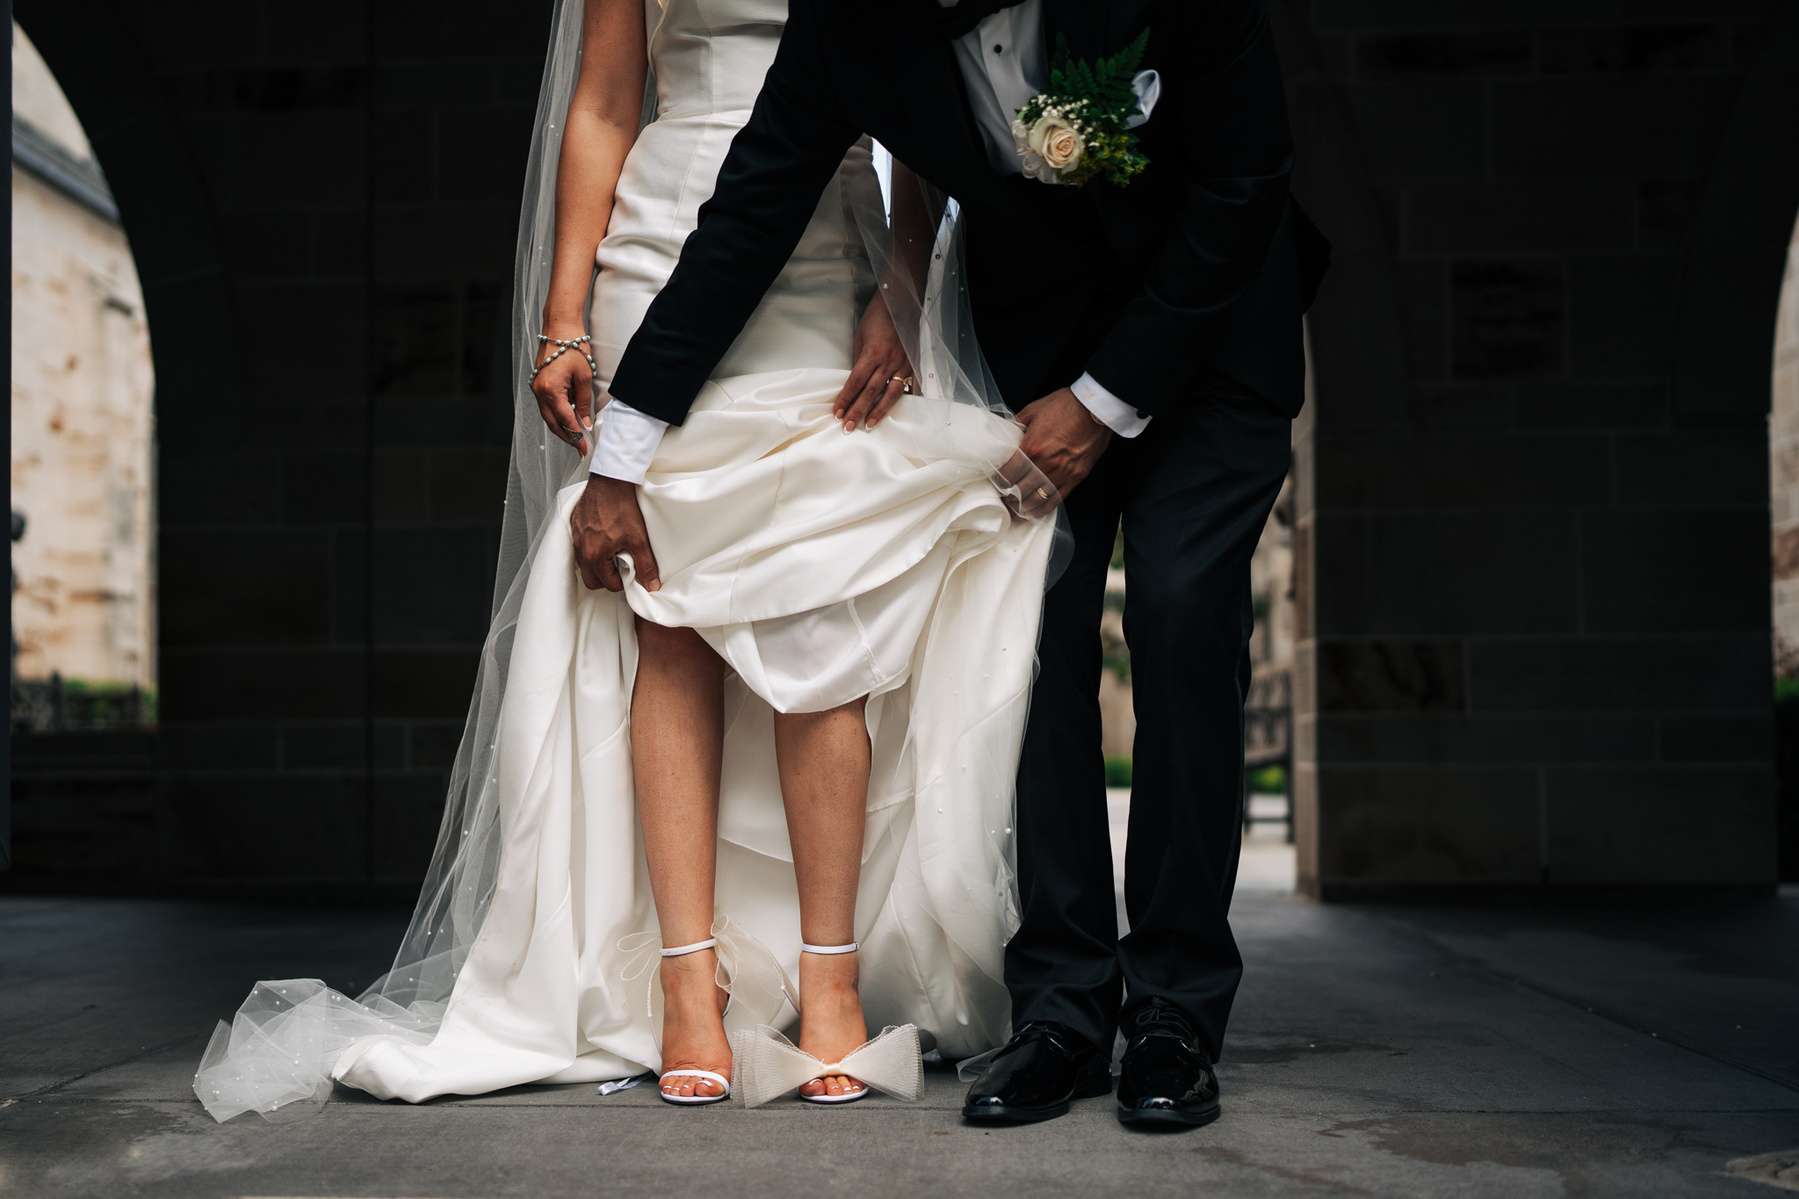 Wedding details - bride shoes